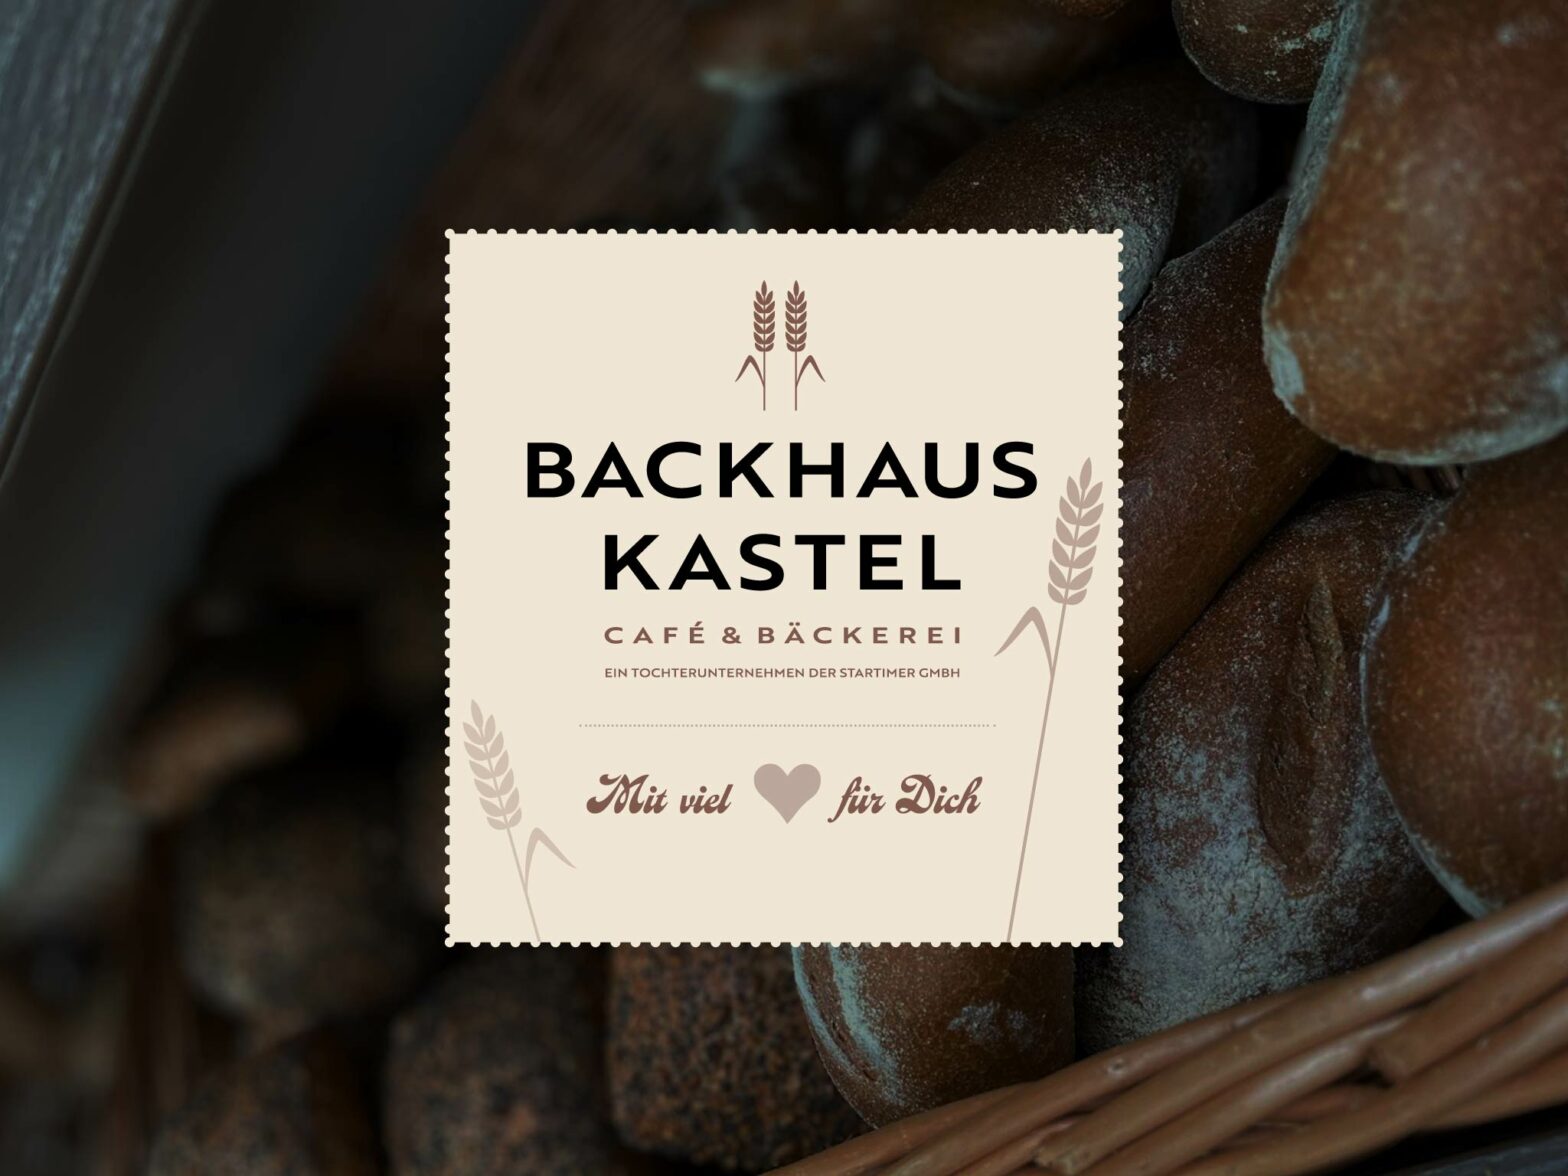 Backhaus Kastel